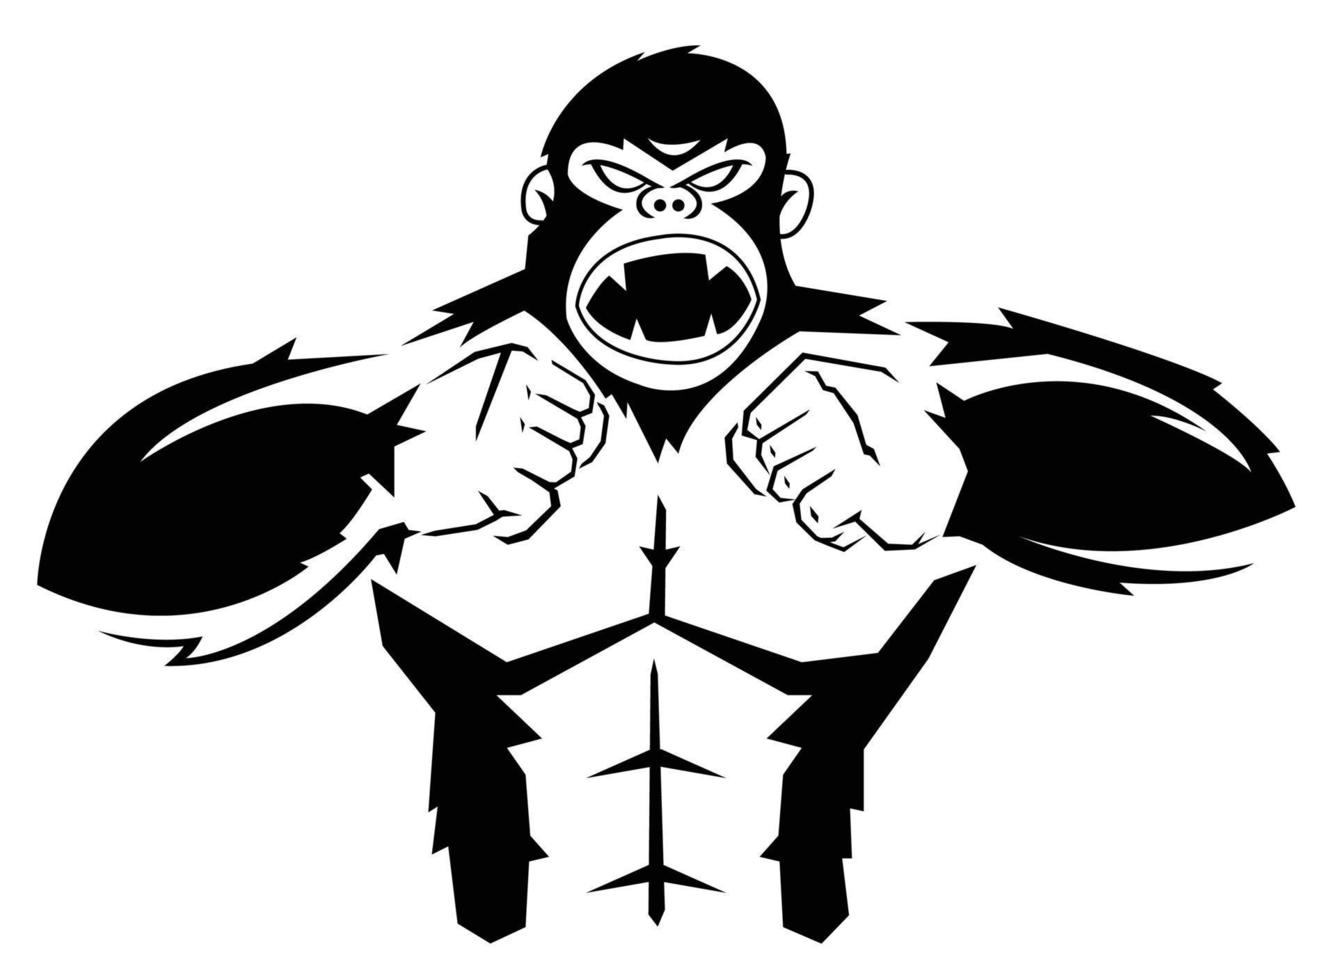 Gorilla vector illustration